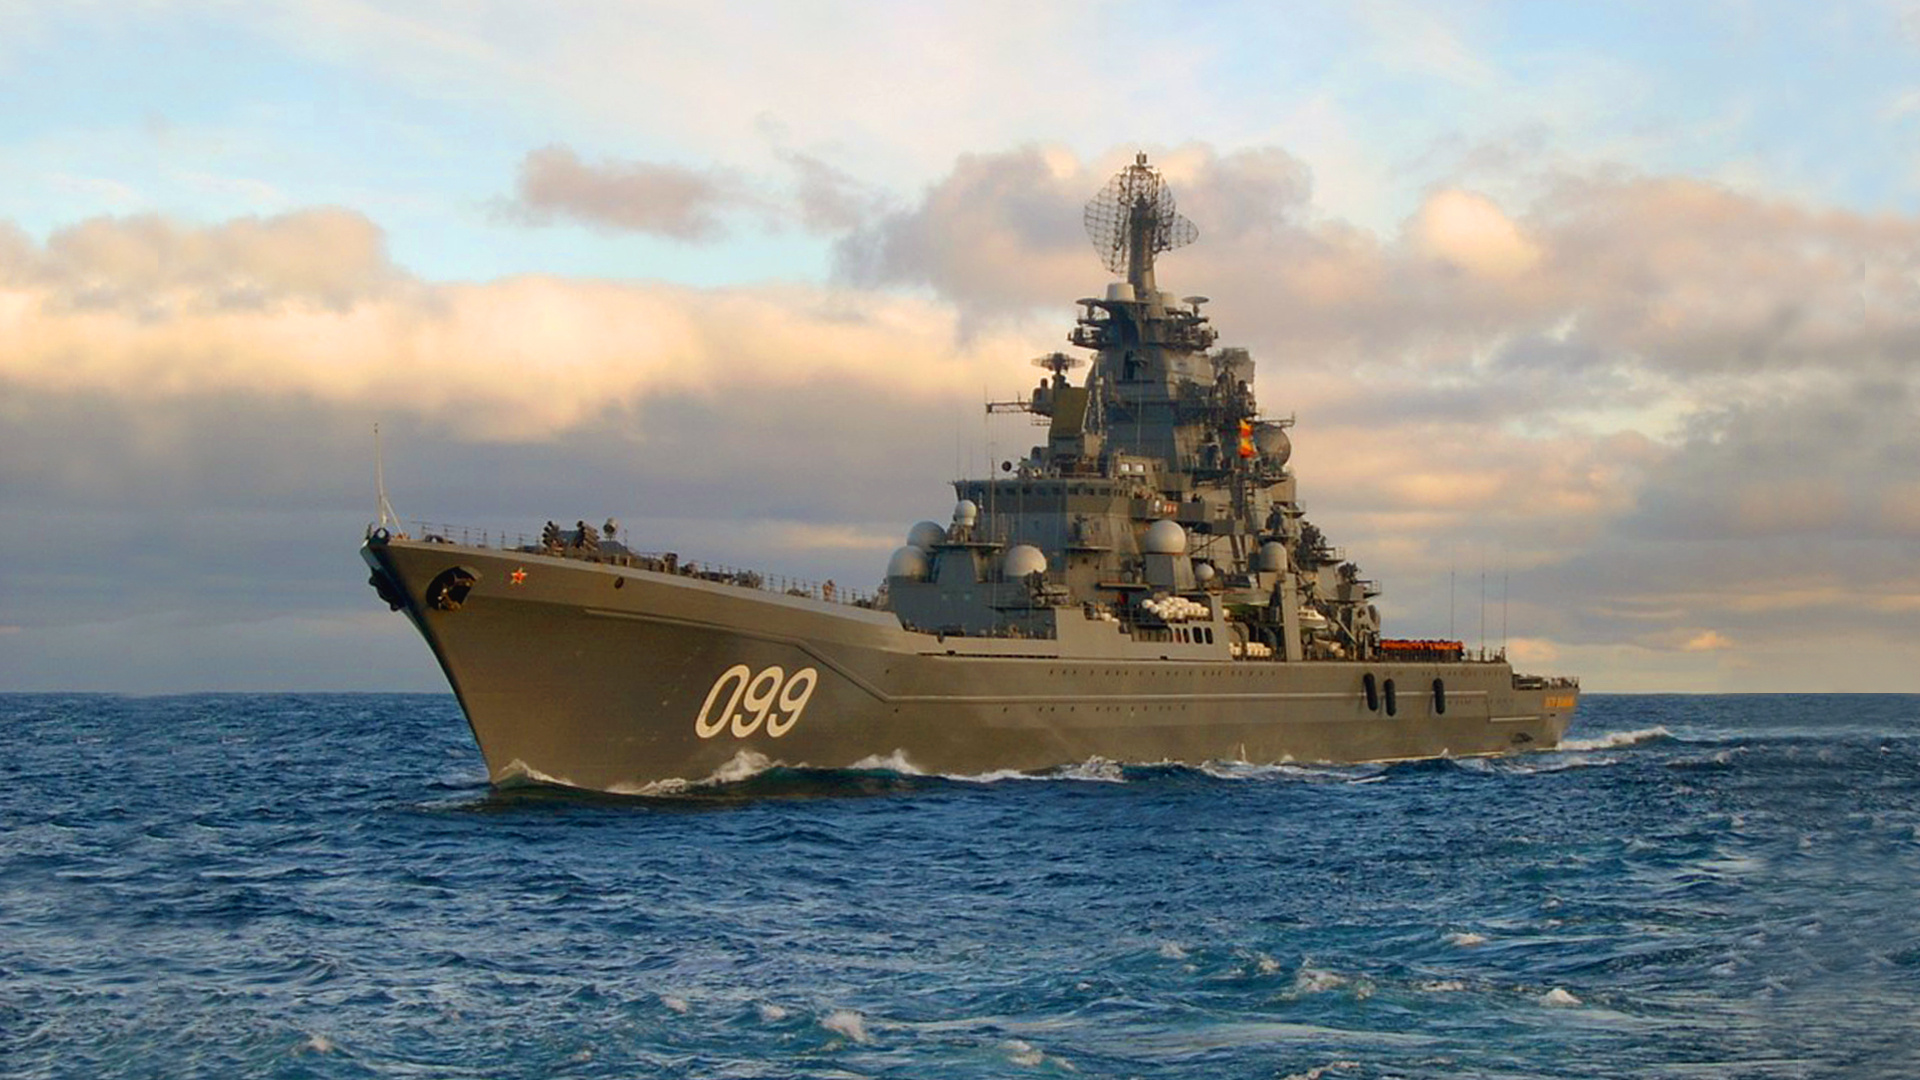 俄罗斯战列巡洋舰 Pyotr Velikiy, 俄罗斯海军, 战列巡洋舰, 巡洋舰, 军舰 壁纸 1920x1080 允许